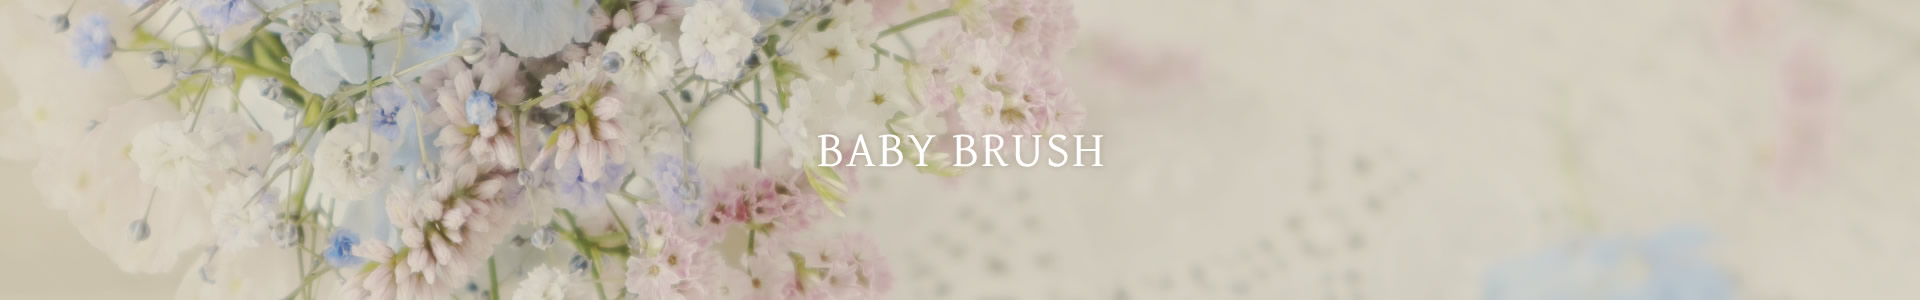 Baby brush